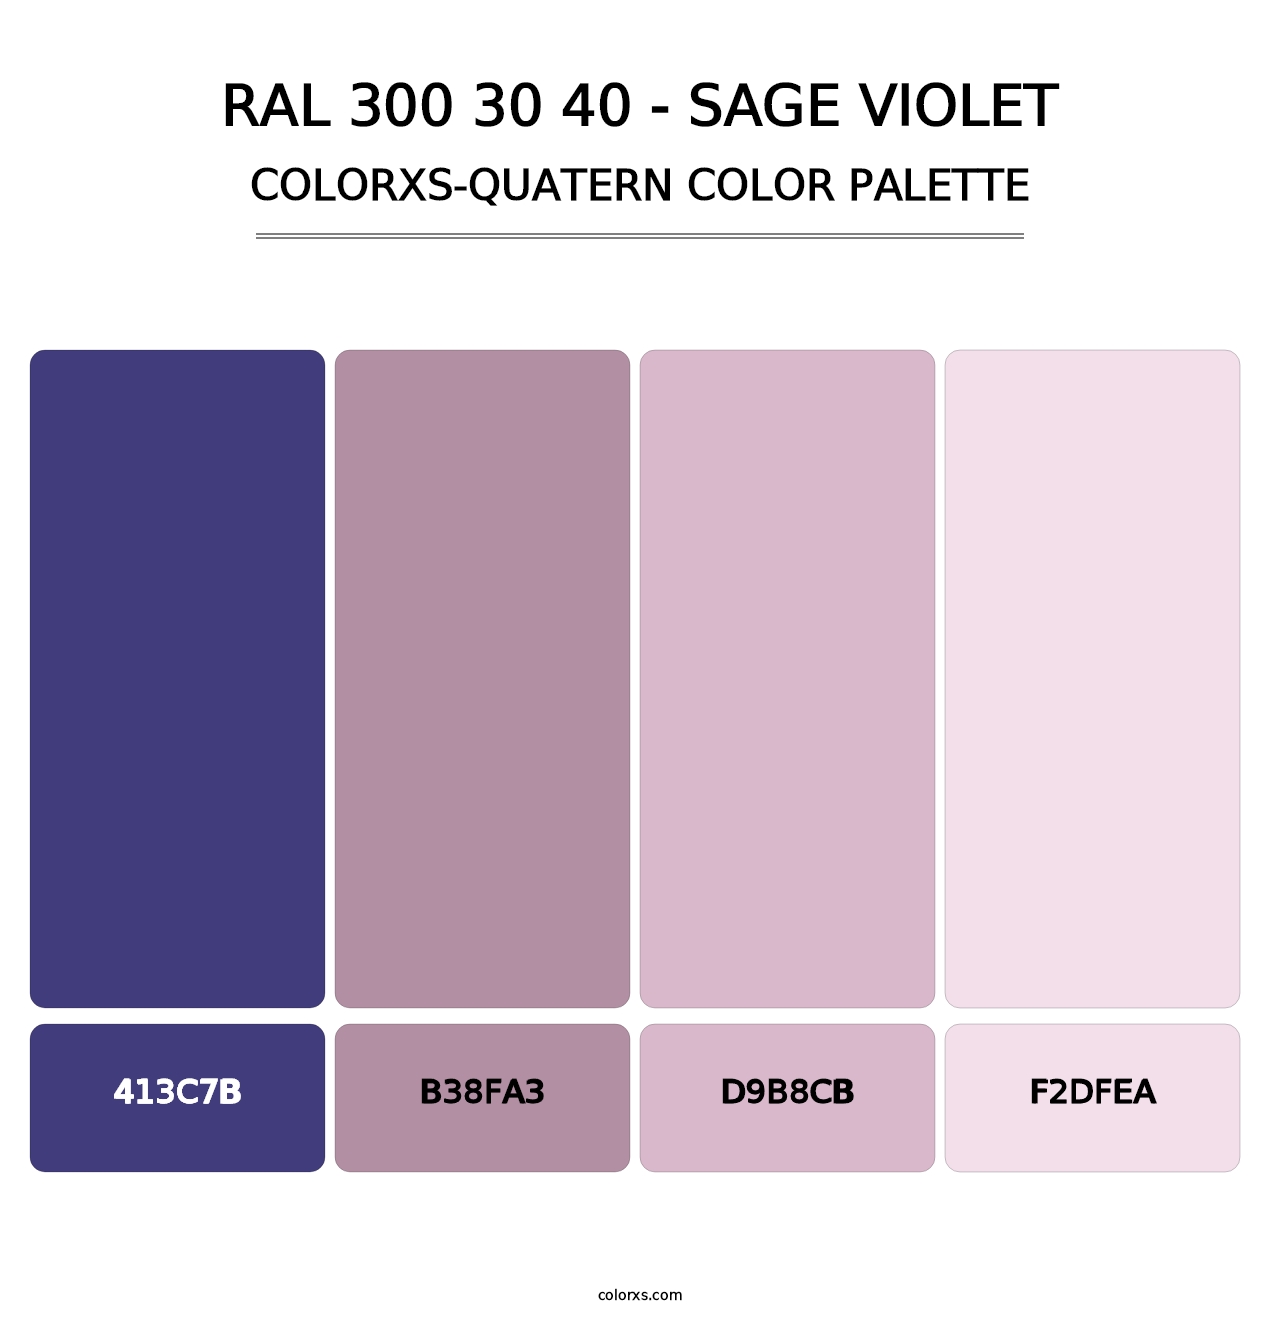 RAL 300 30 40 - Sage Violet - Colorxs Quatern Palette